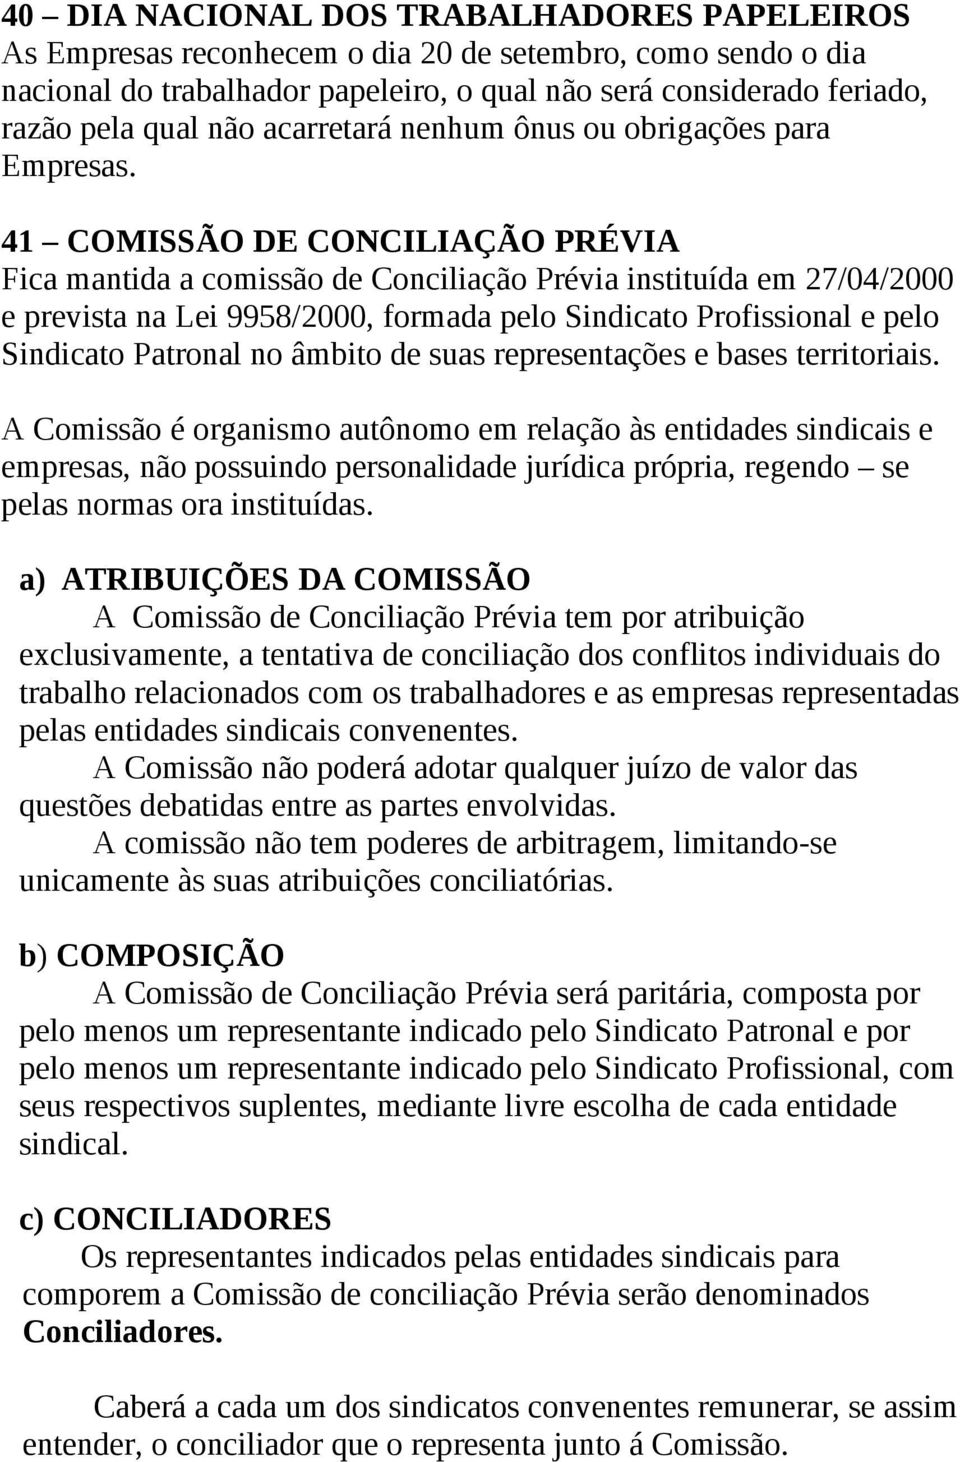 41 COMISSÃO DE CONCILIAÇÃO PRÉVIA Fica mantida a comissão de Conciliação Prévia instituída em 27/04/2000 e prevista na Lei 9958/2000, formada pelo Sindicato Profissional e pelo Sindicato Patronal no